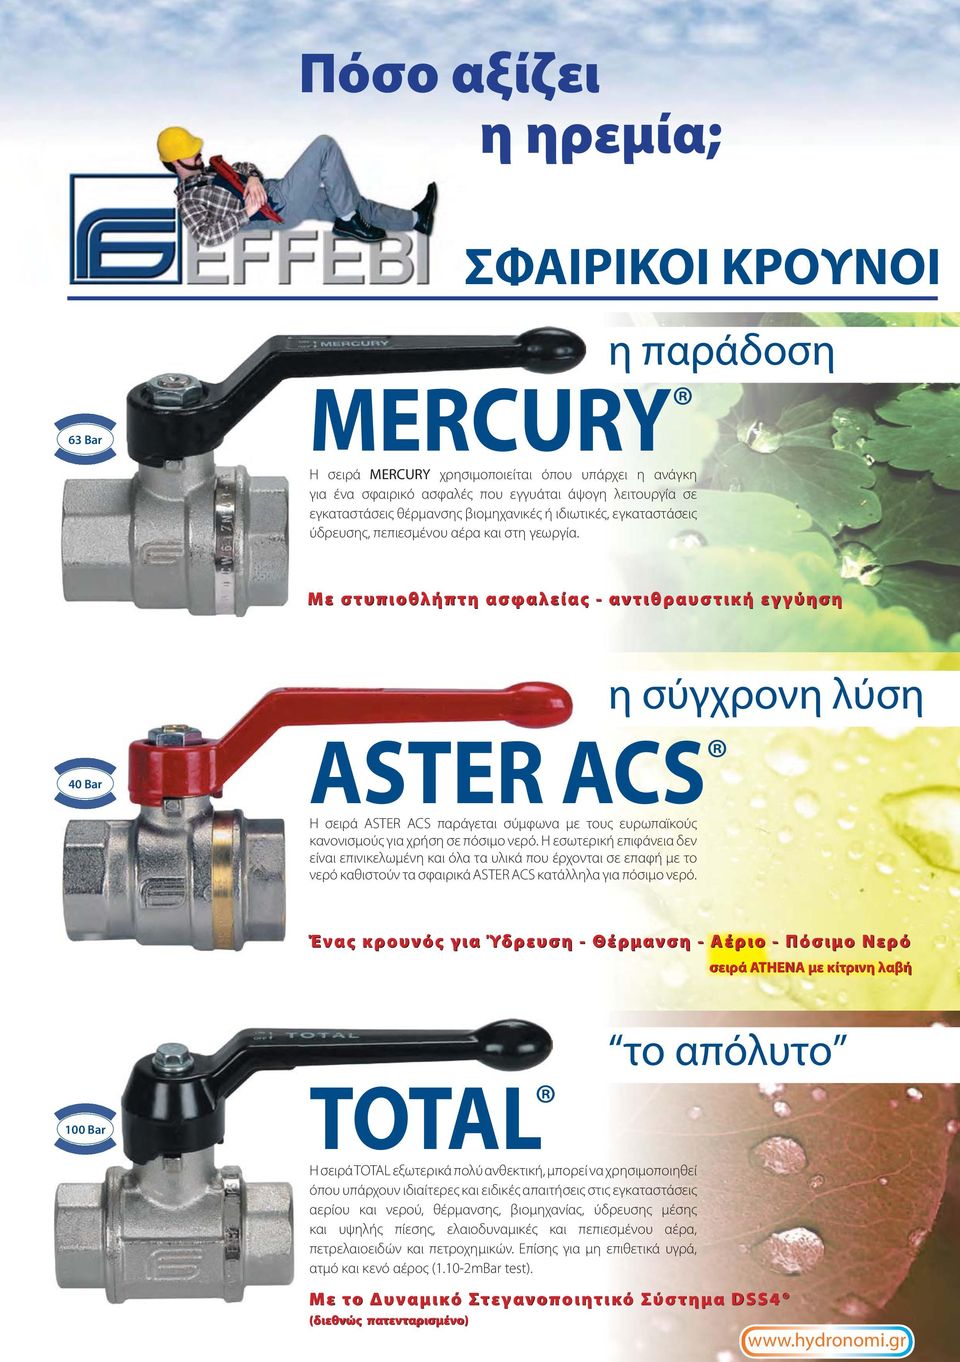 Με στυπιοθλήπτη ασφαλείας - αντιθραυστική εγγύηση η σύγχρονη λύση 40 Bar ASTER ACS Η σειρά ASTER ACS παράγεται σύμφωνα με τους ευρωπαϊκούς κανονισμούς για χρήση σε πόσιμο νερό.